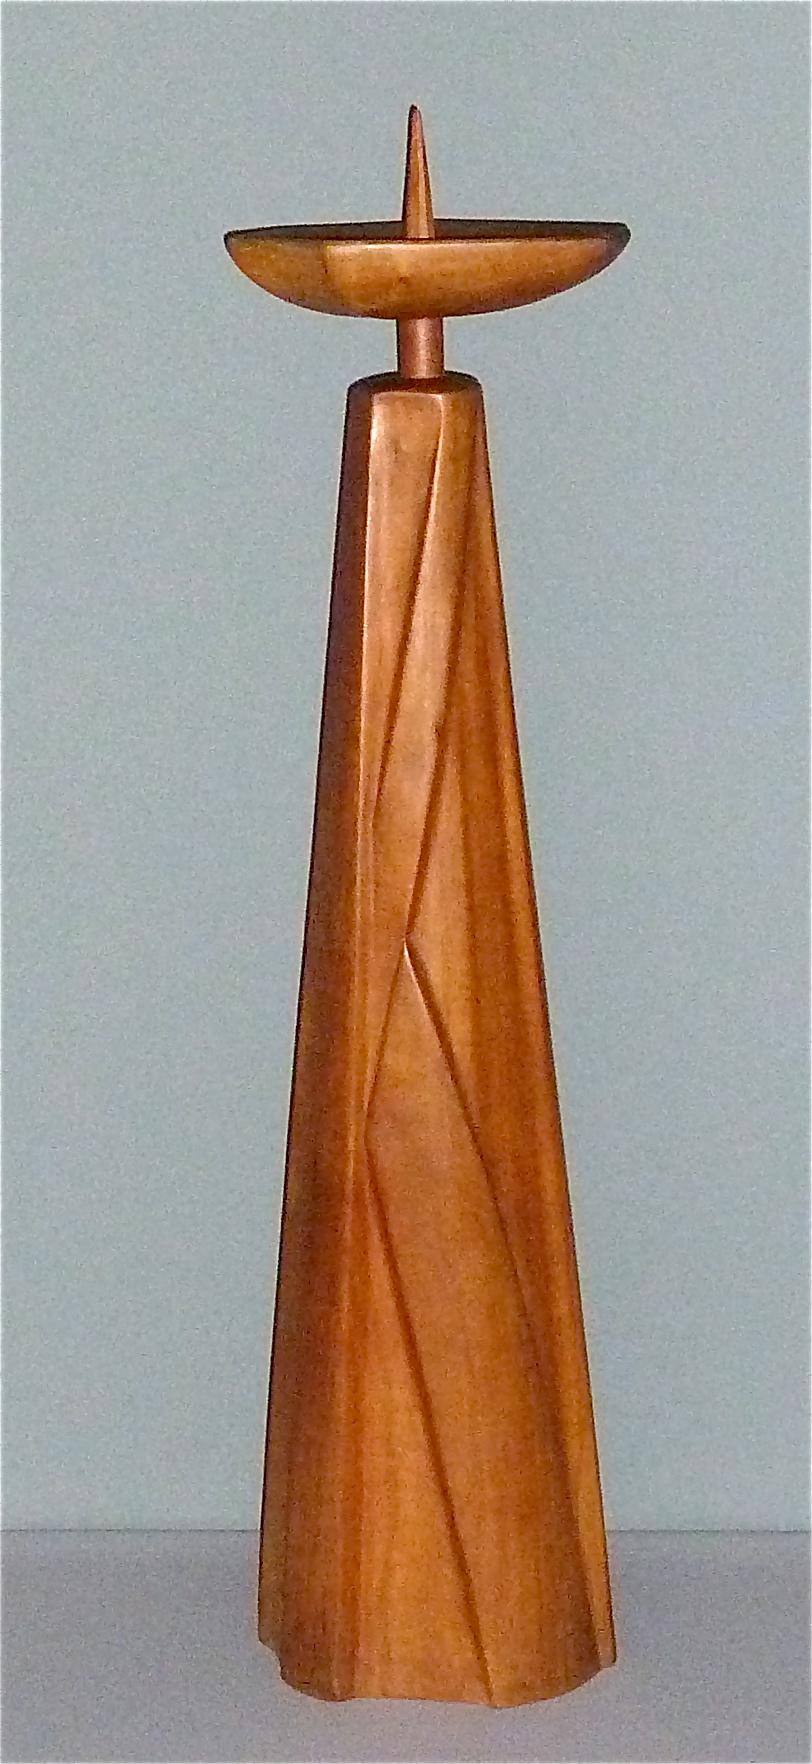 Grand bougeoir sculptural en bois de noyer massif fabriqué en Allemagne vers 1930-1950, cercle des Rudolf Steiner Werkstätten / atelier de Dornach attribution. Signé au bas avec une marque d'artiste non identifiée, les critères anthroposophiques de